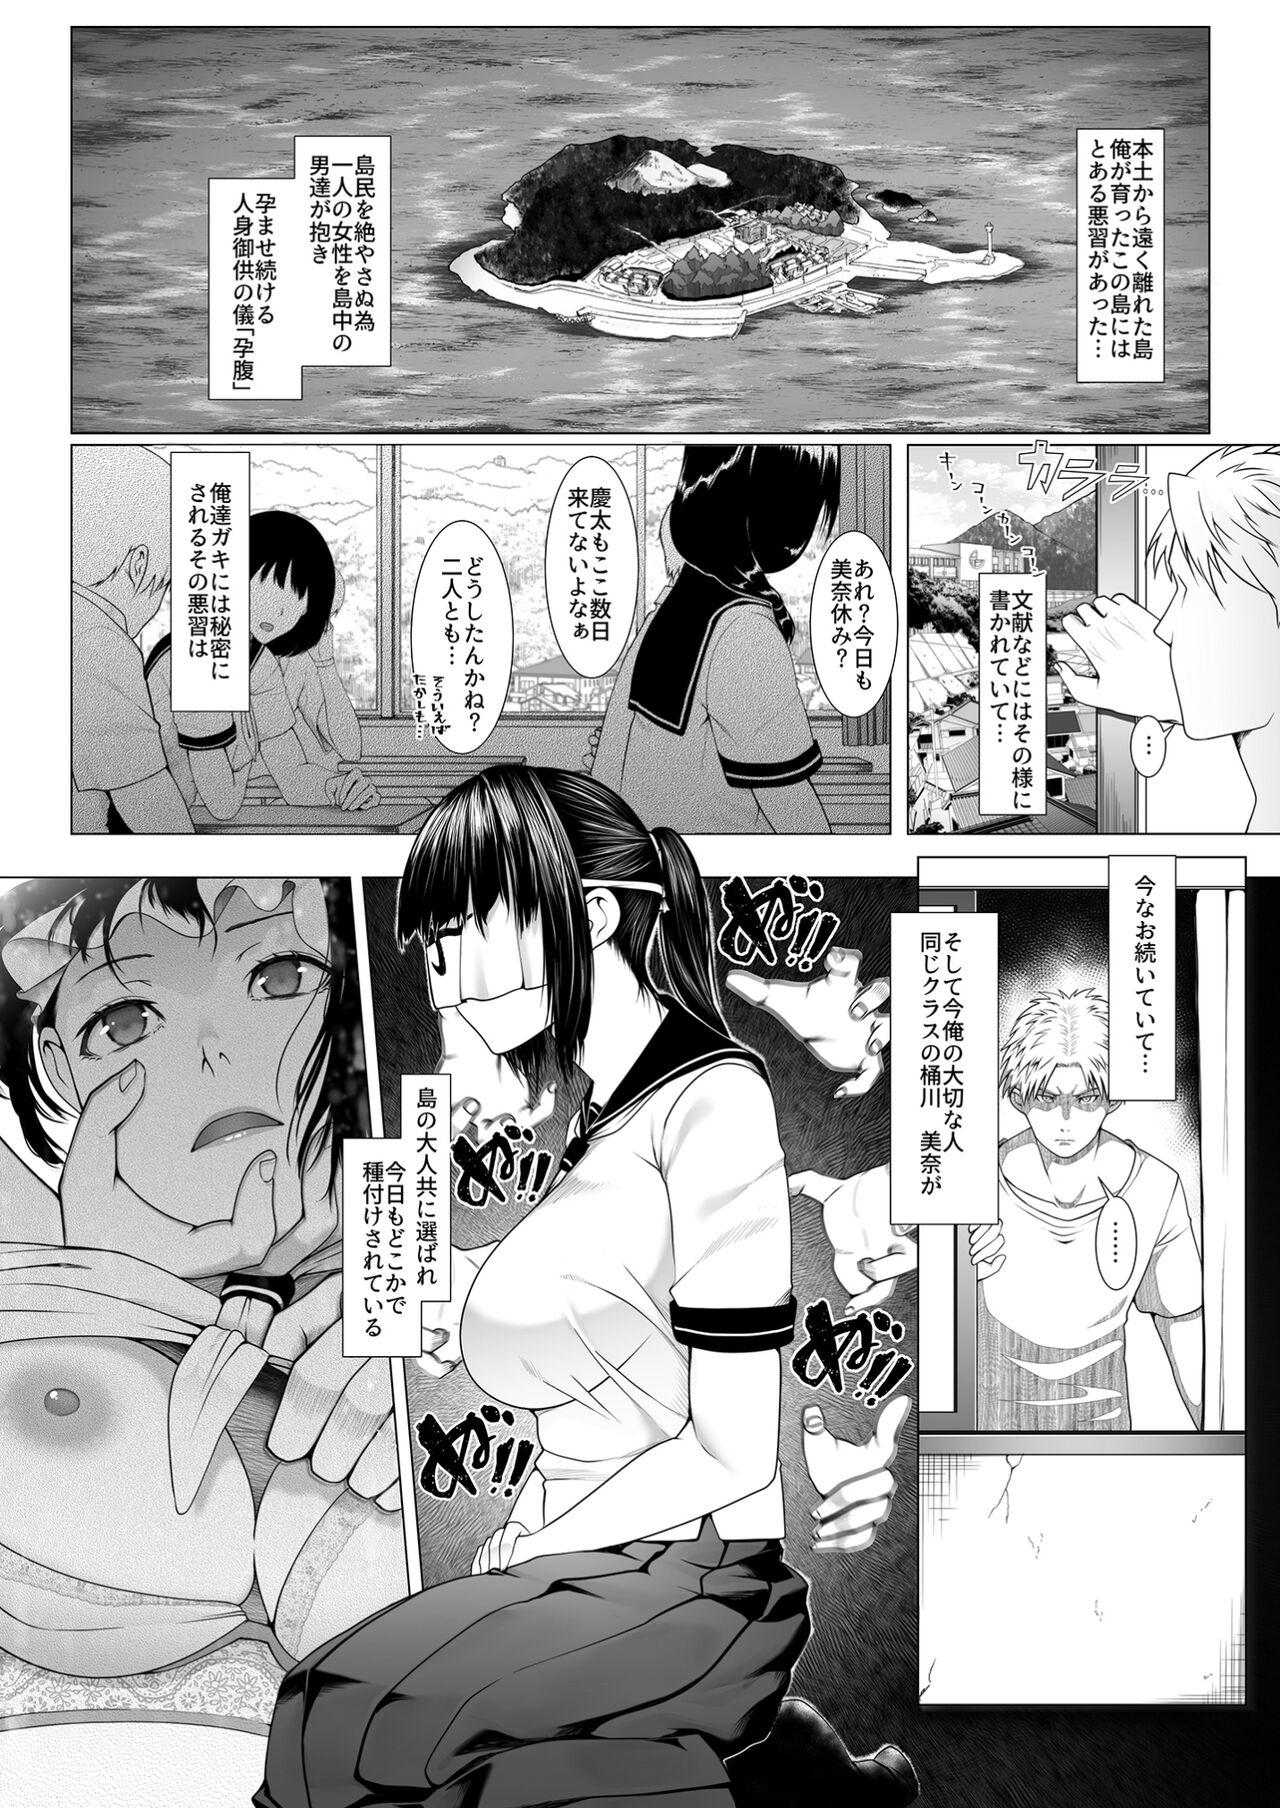 Perfect Girl Porn Haramase no Shima 4 - Original Gay Hairy - Page 2